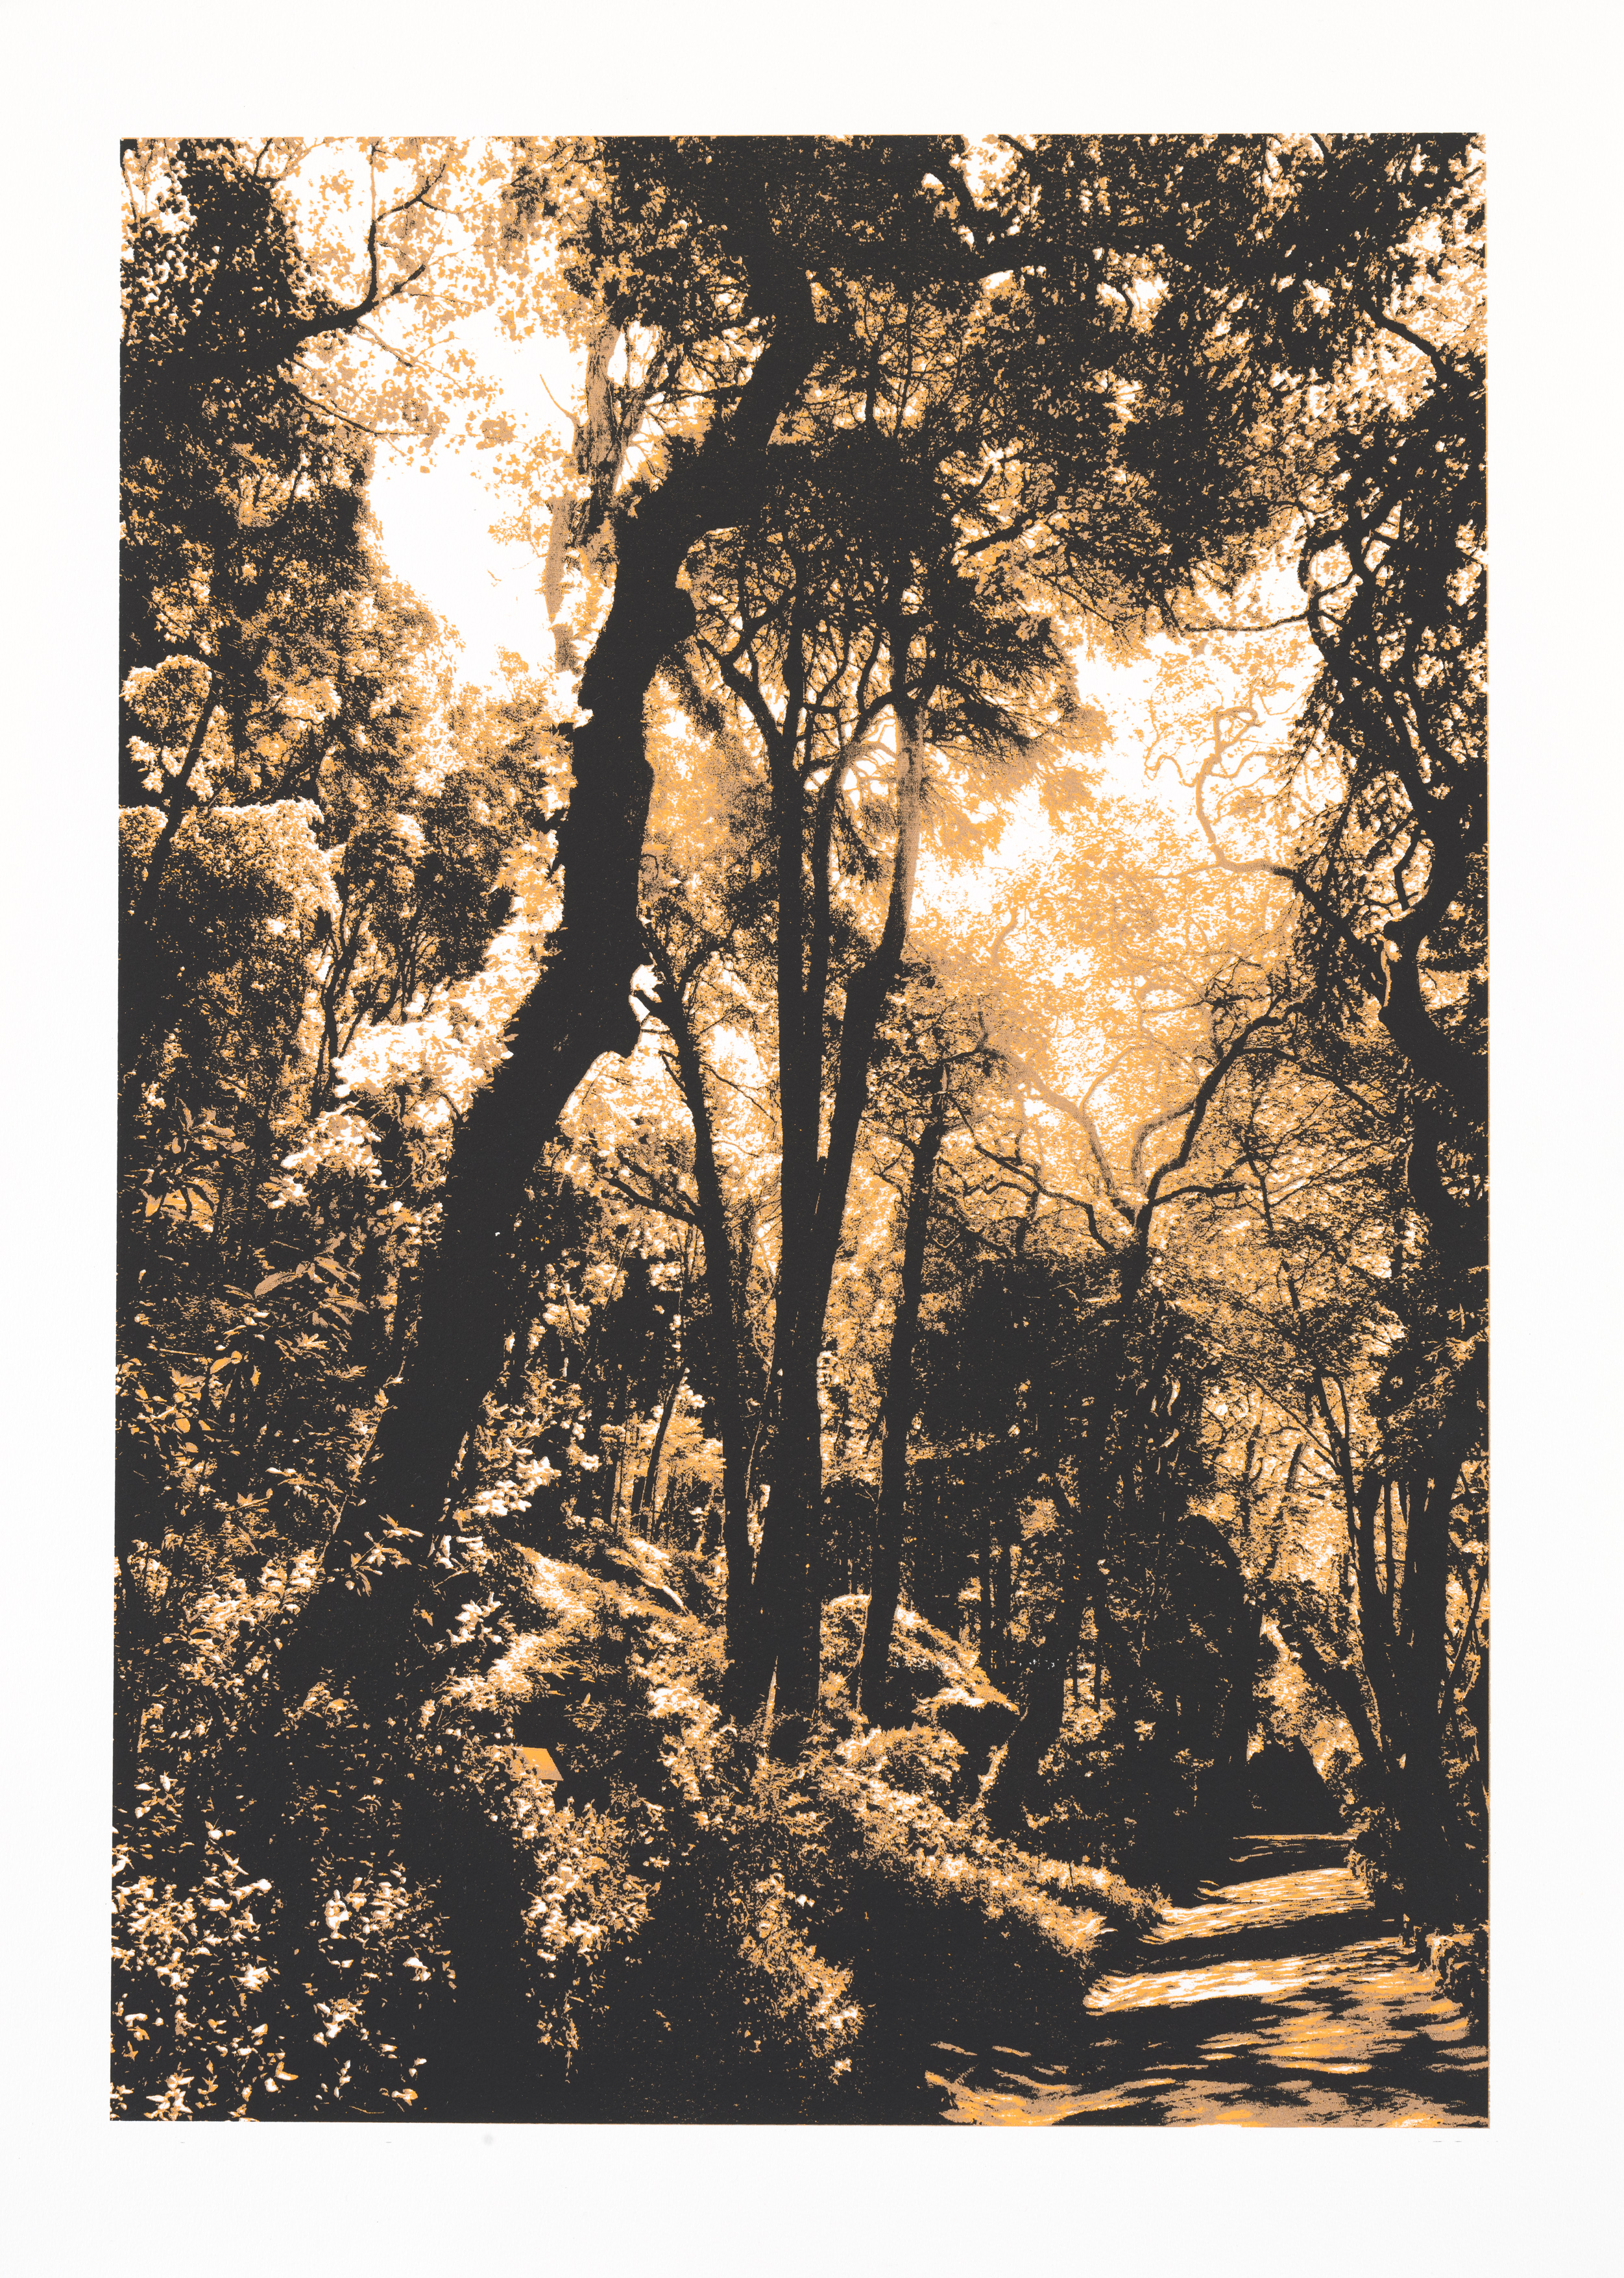 "So os caminhos eram meus" 70 x 50 cm. silkscreenprint (2011)